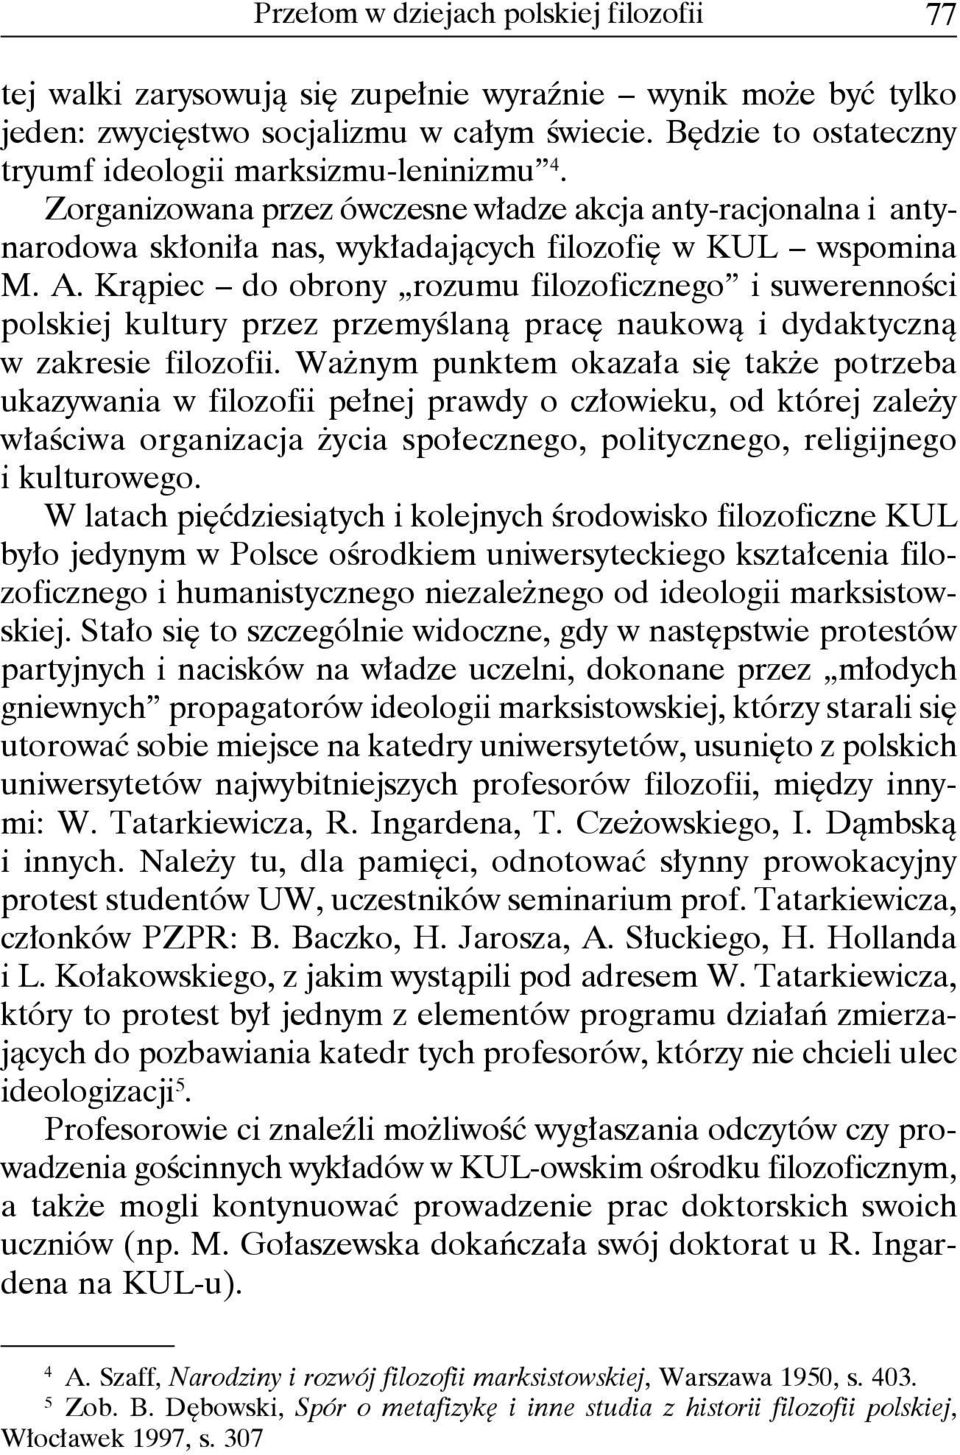 Krąpiec do obrony rozumu filozoficznego i suwerenności polskiej kultury przez przemyślaną pracę naukową i dydaktyczną w zakresie filozofii.